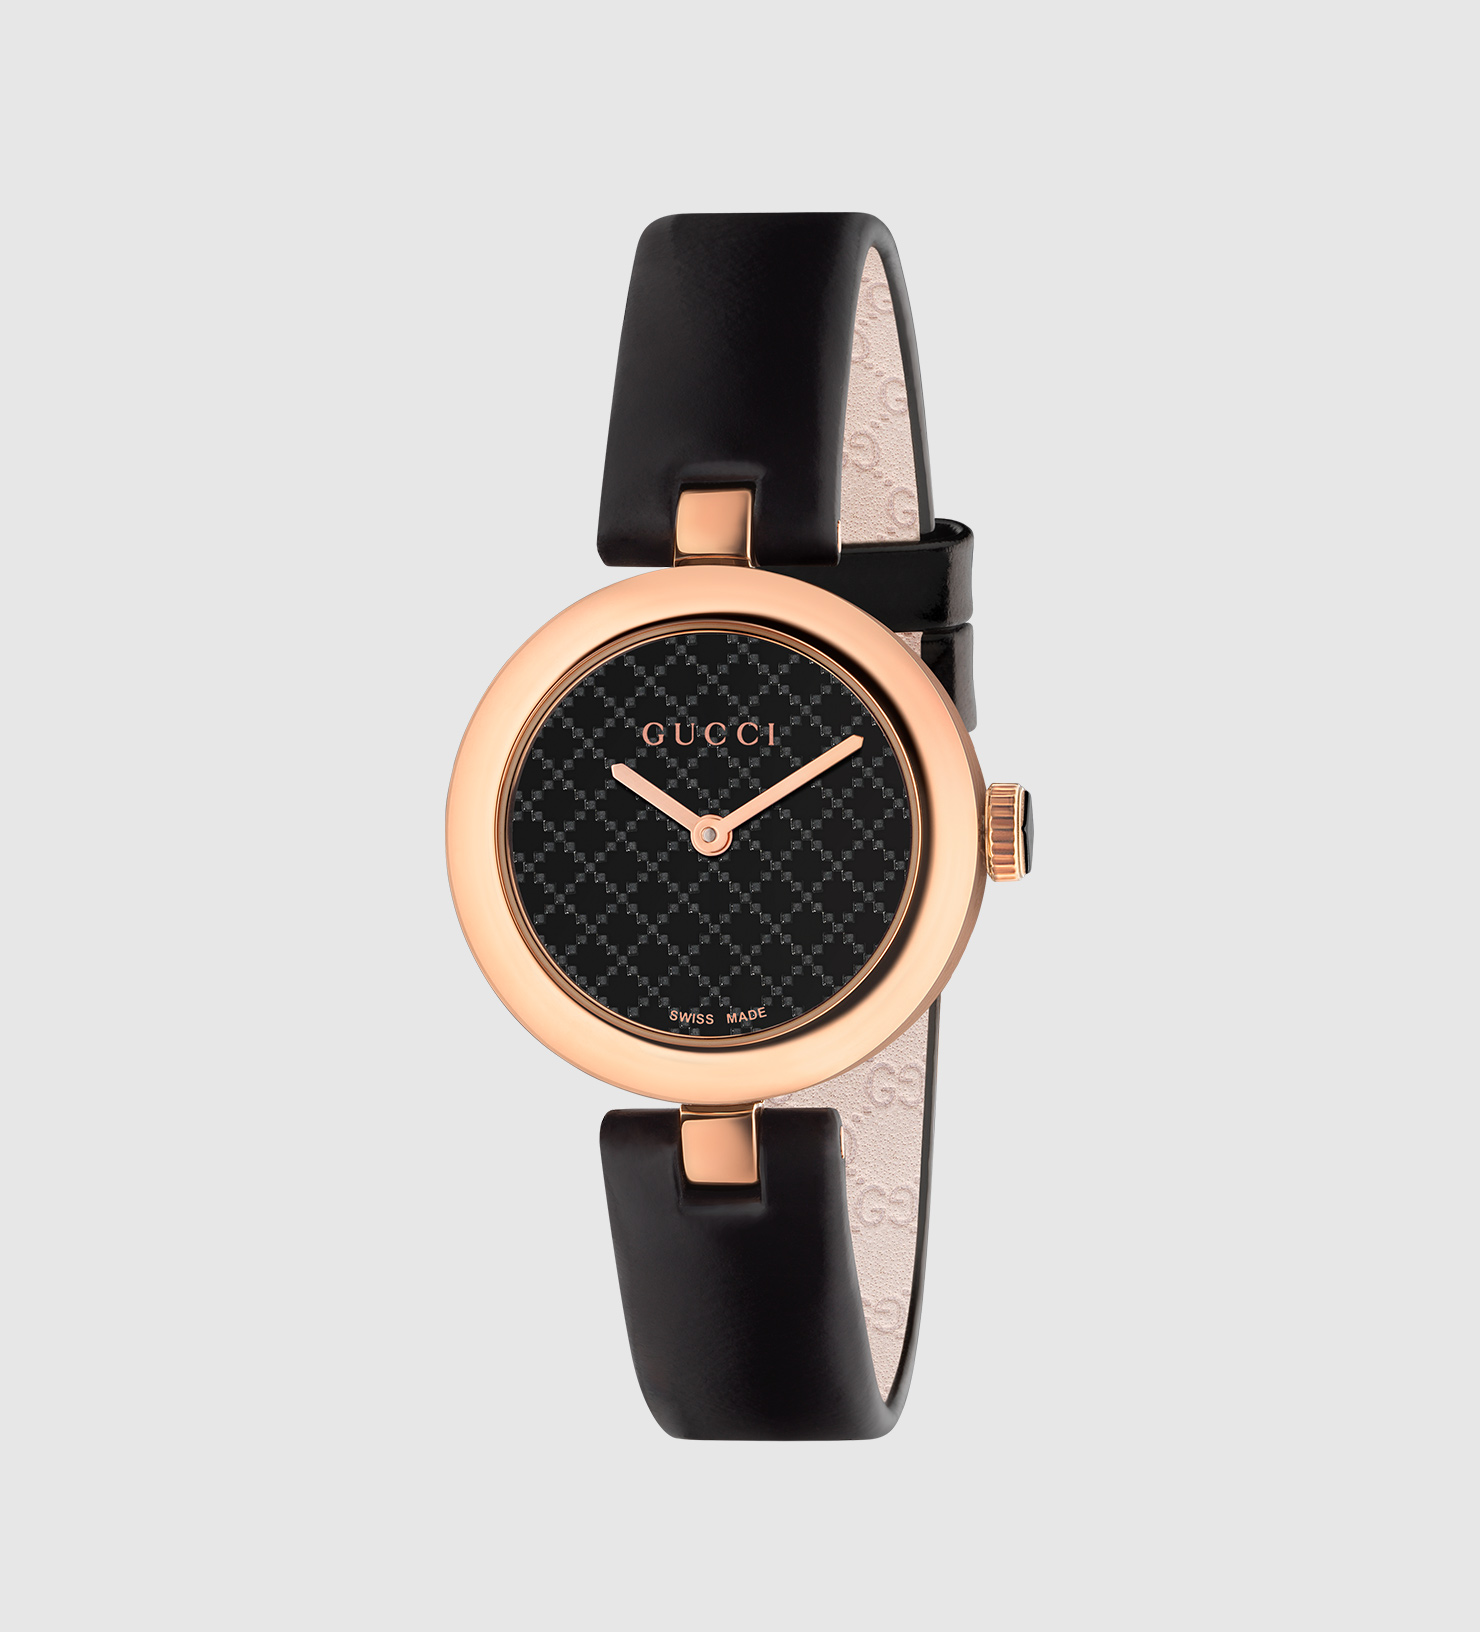 gucci's 2016 cool horloges nam de definitie van interessant en anders naar een ander niveau  